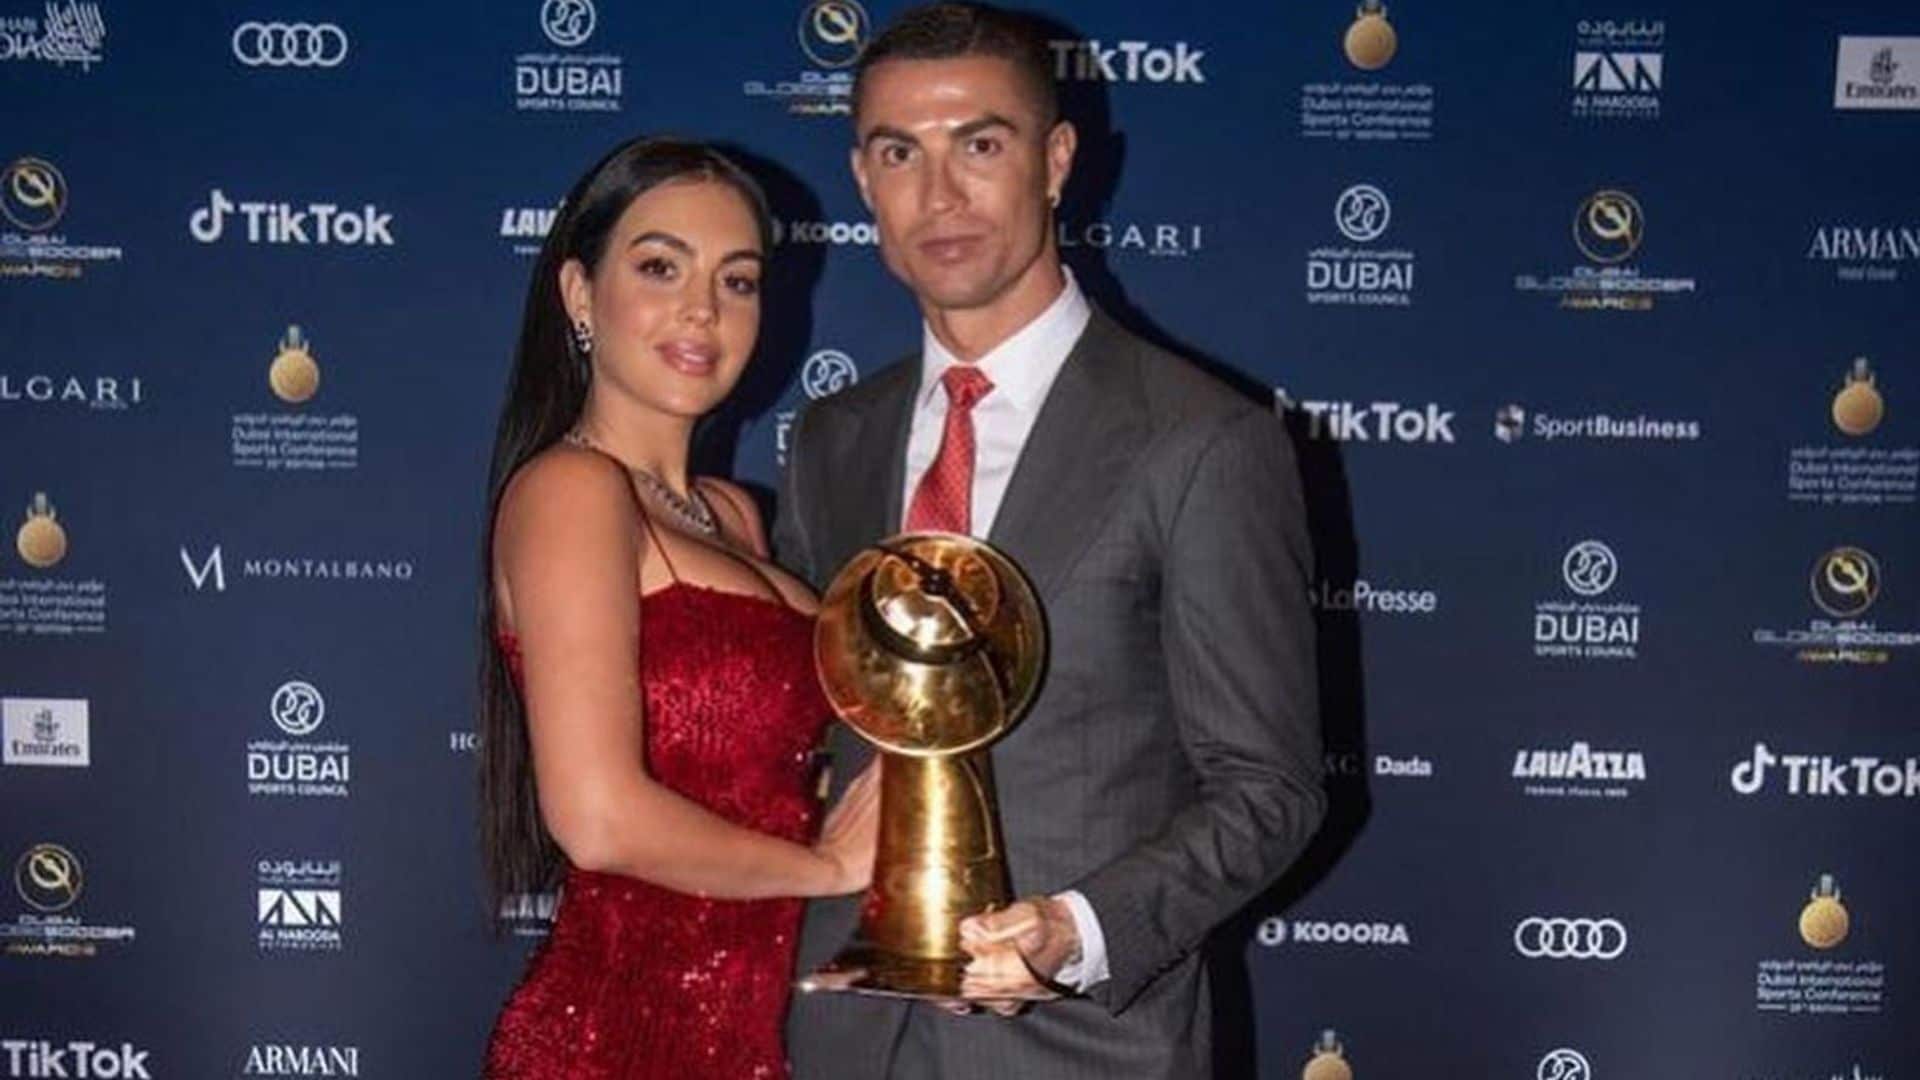 Georgina se supera con su vestido 'ultrasexy' y cinematográfico en la gran noche de Ronaldo